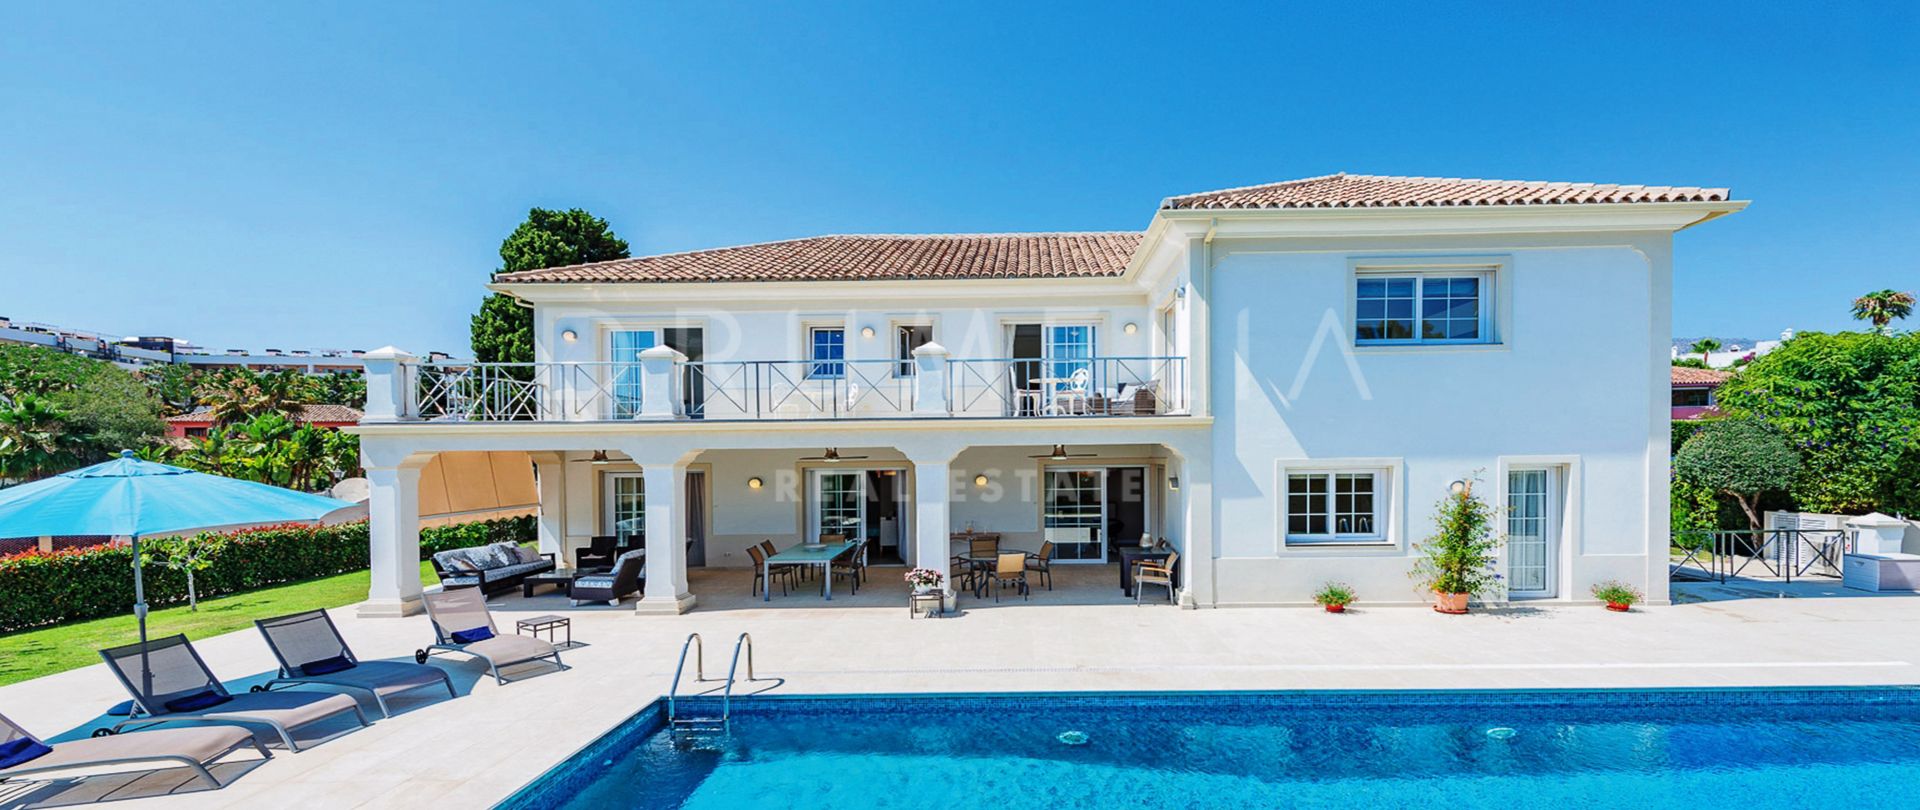 Klassisch moderne mediterrane High-End-Villa in Casablanca, Marbella Goldene Meile